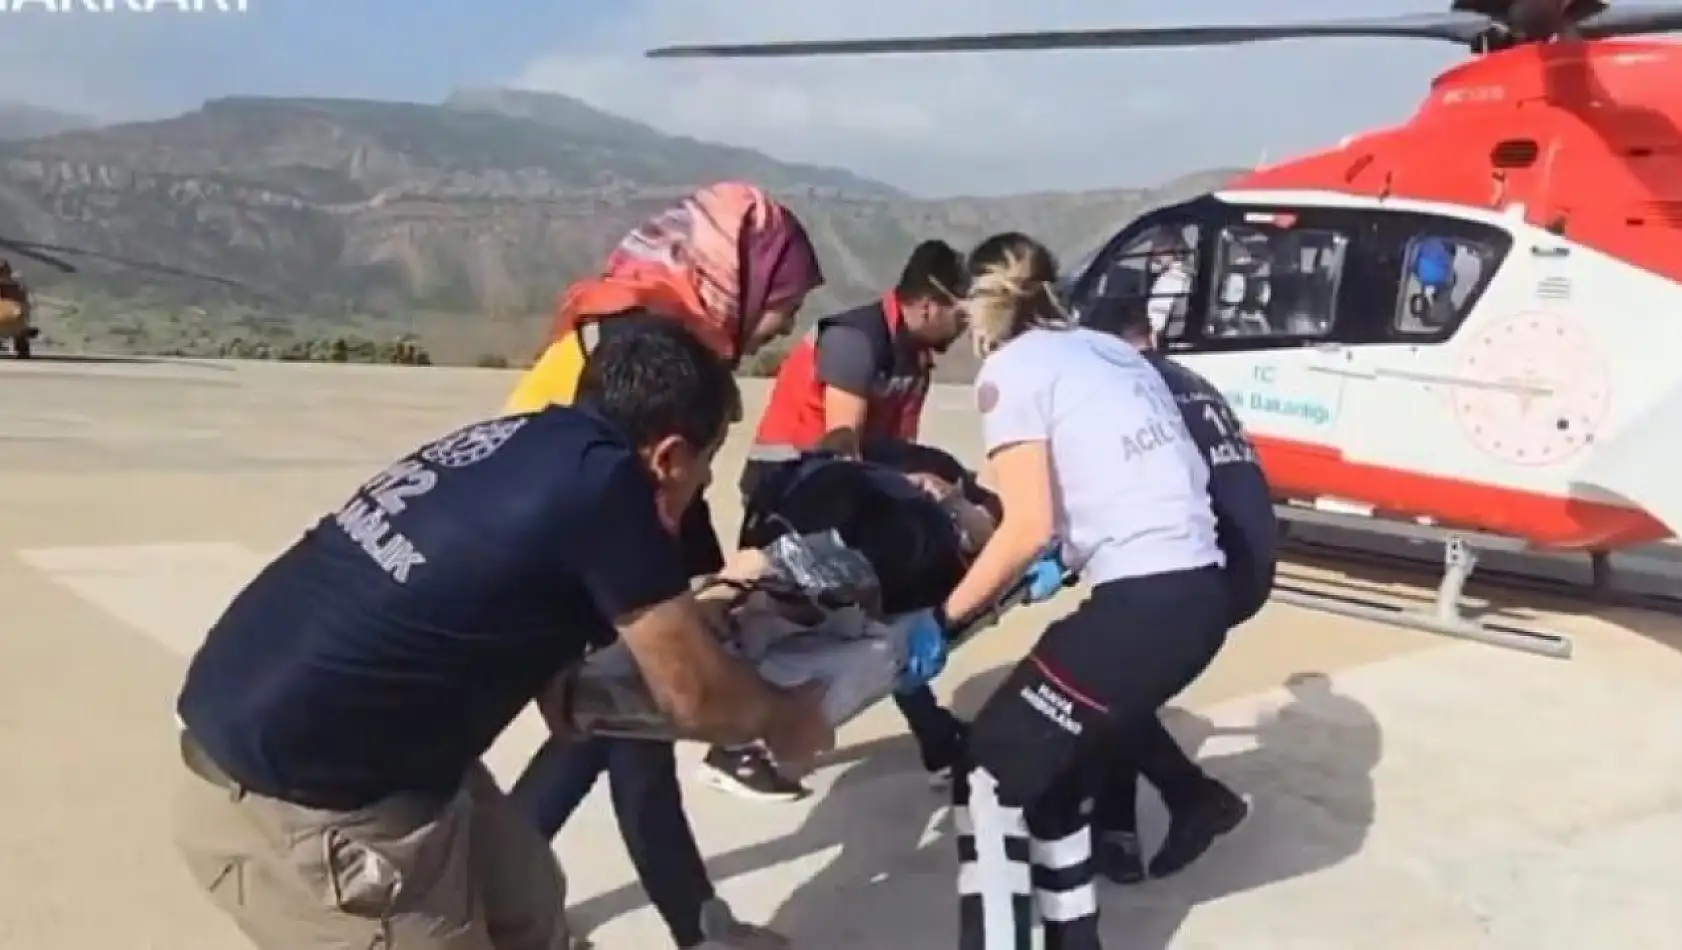 Ambulans helikopter hamile kadın için havalandı